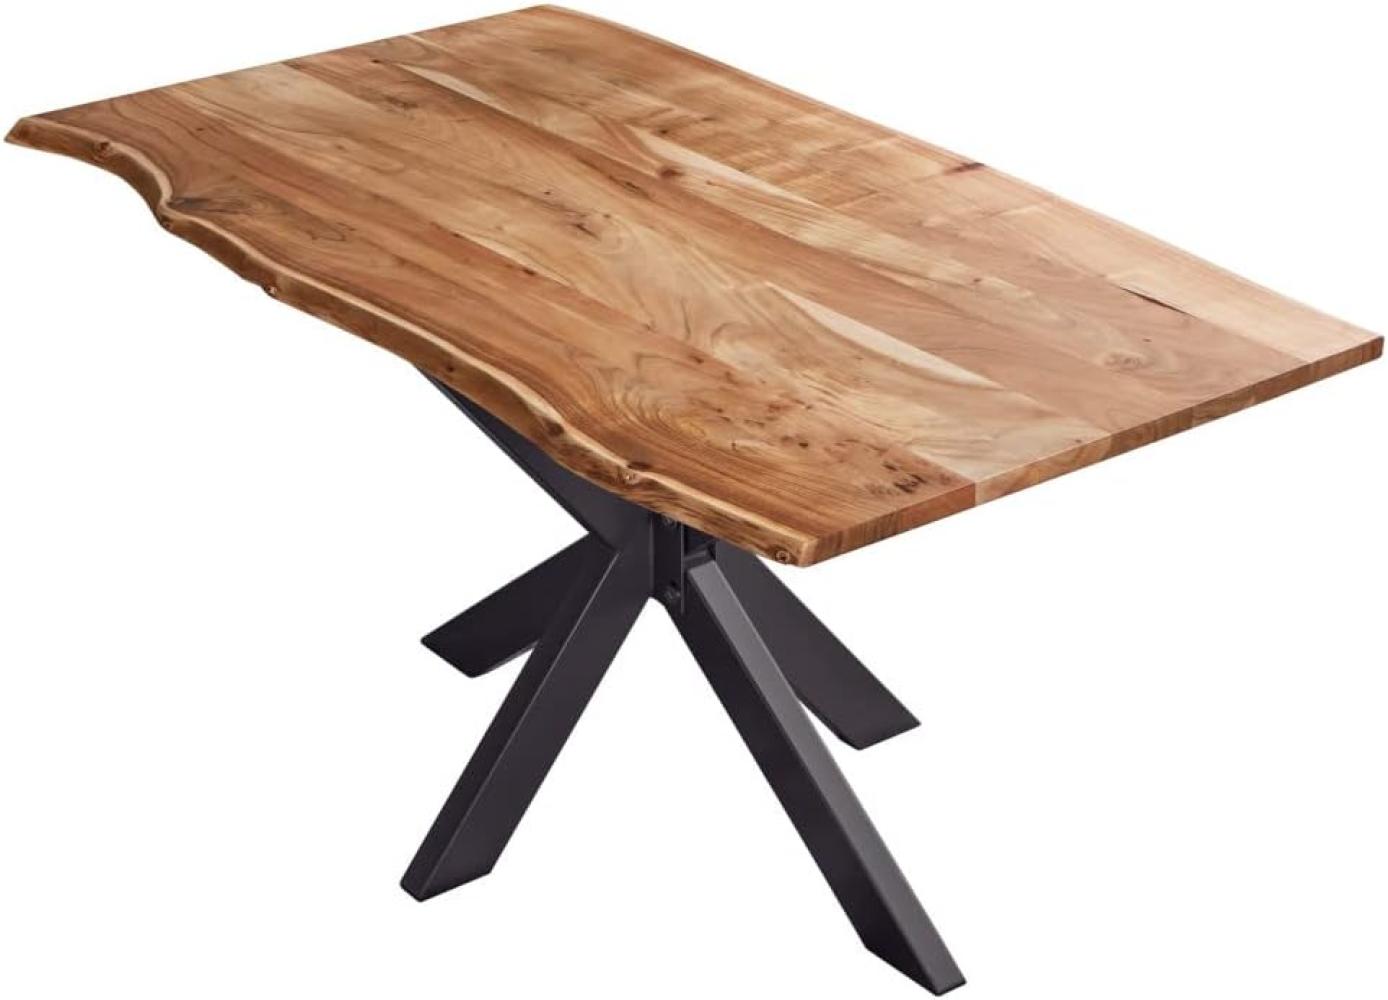 SAM Esstisch 140x80cm Benni, Akazienholz massiv + naturfarben, echte Baumkante, Baumkantentisch mit Spider-Metallgestell Schwarz, Esszimmertisch mit Tischplatte 26mm Bild 1